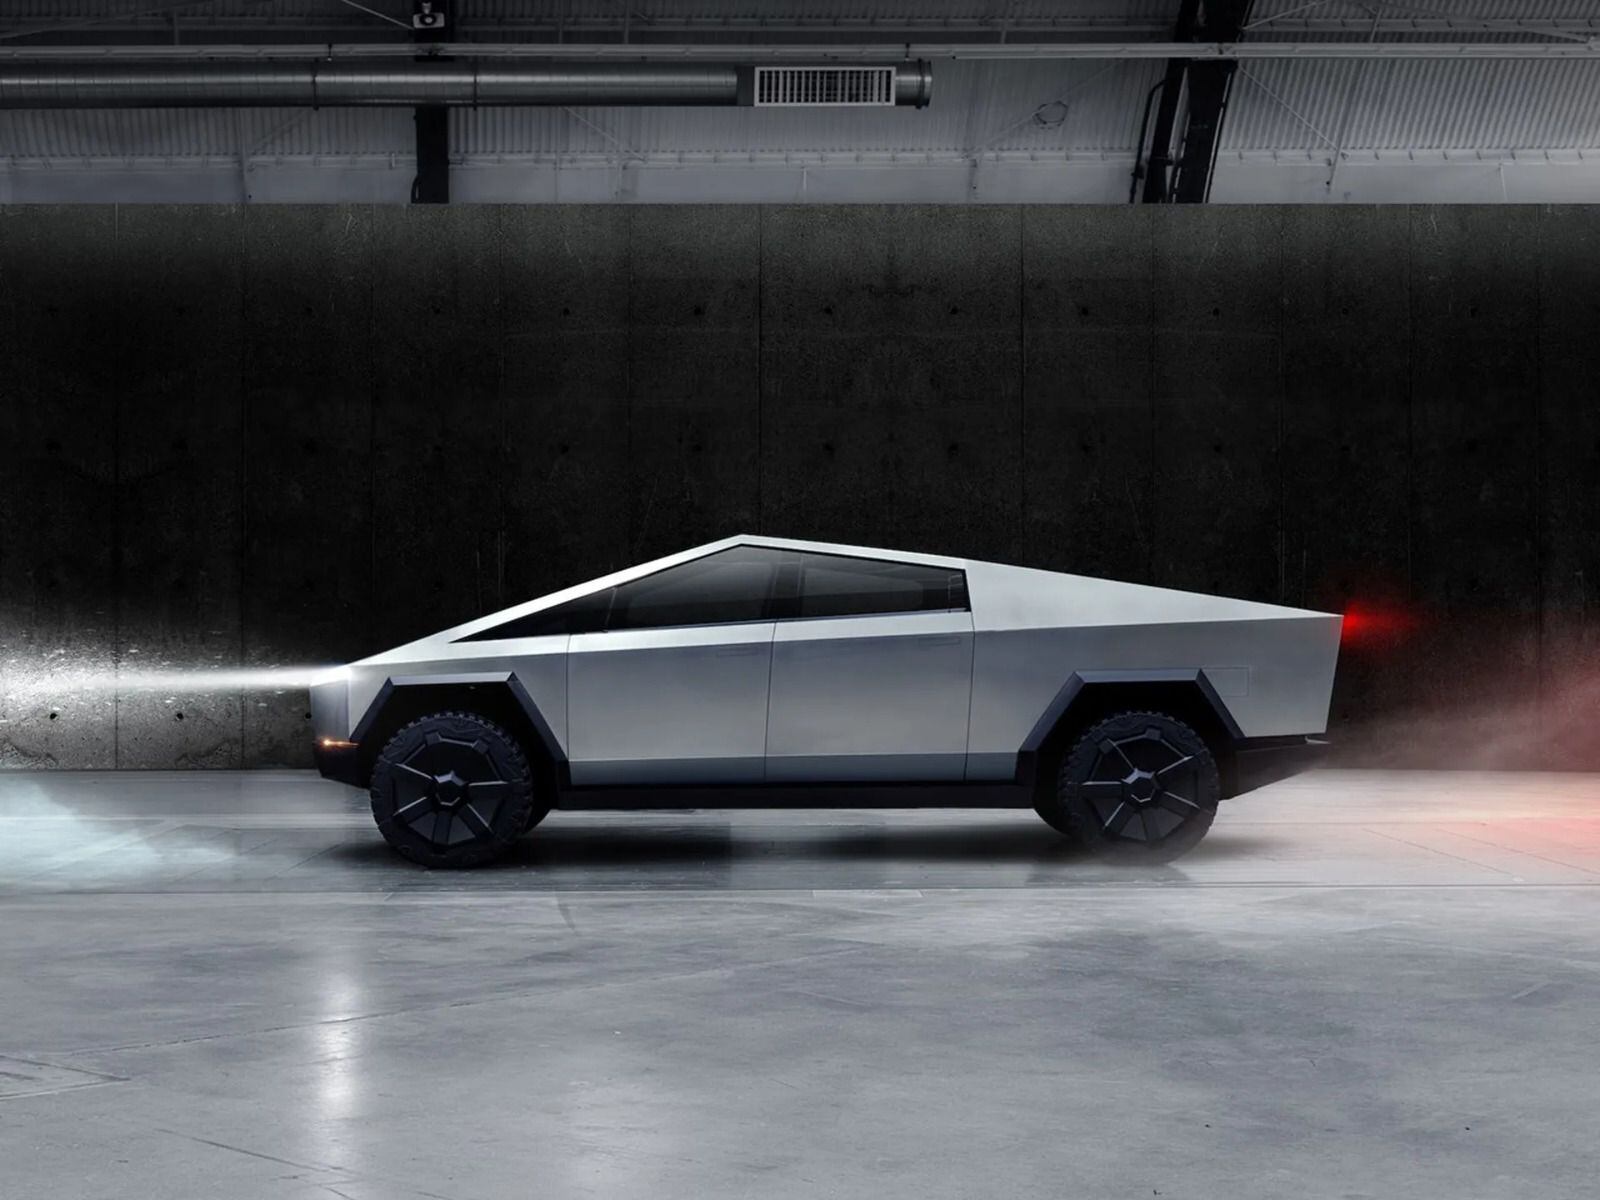 El diseño futurista del Cybertruck ha determinado la apariencia de otros productos de la empresa. (Tesla)